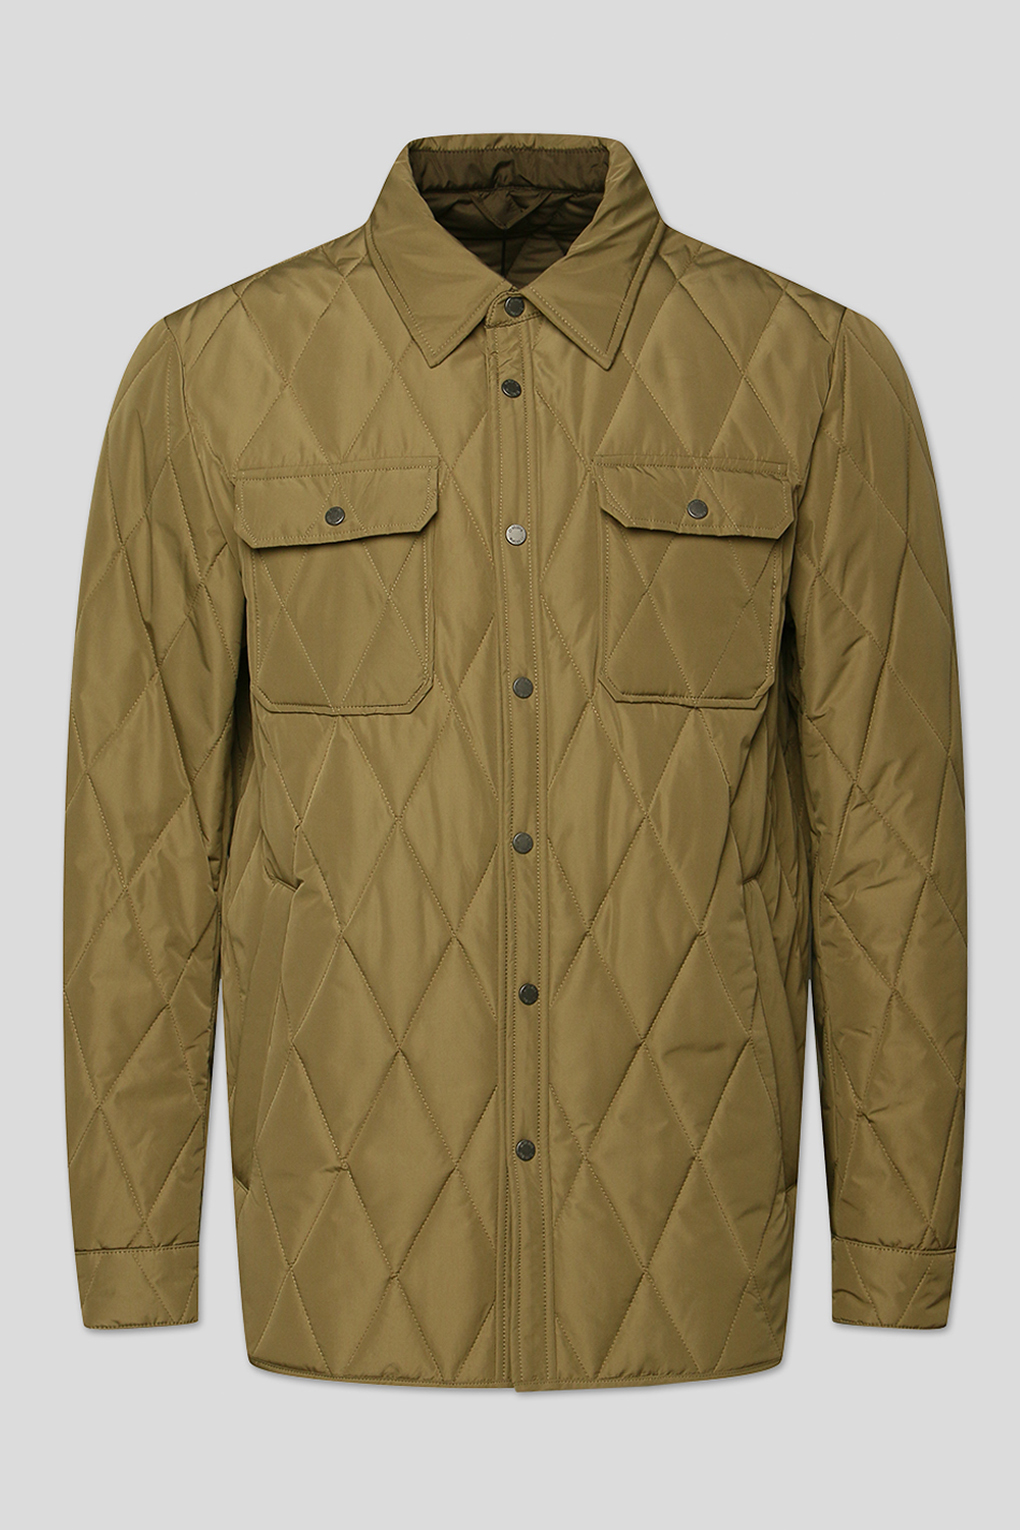 Куртка мужская D.Molina M6110288A коричневая 50 RU